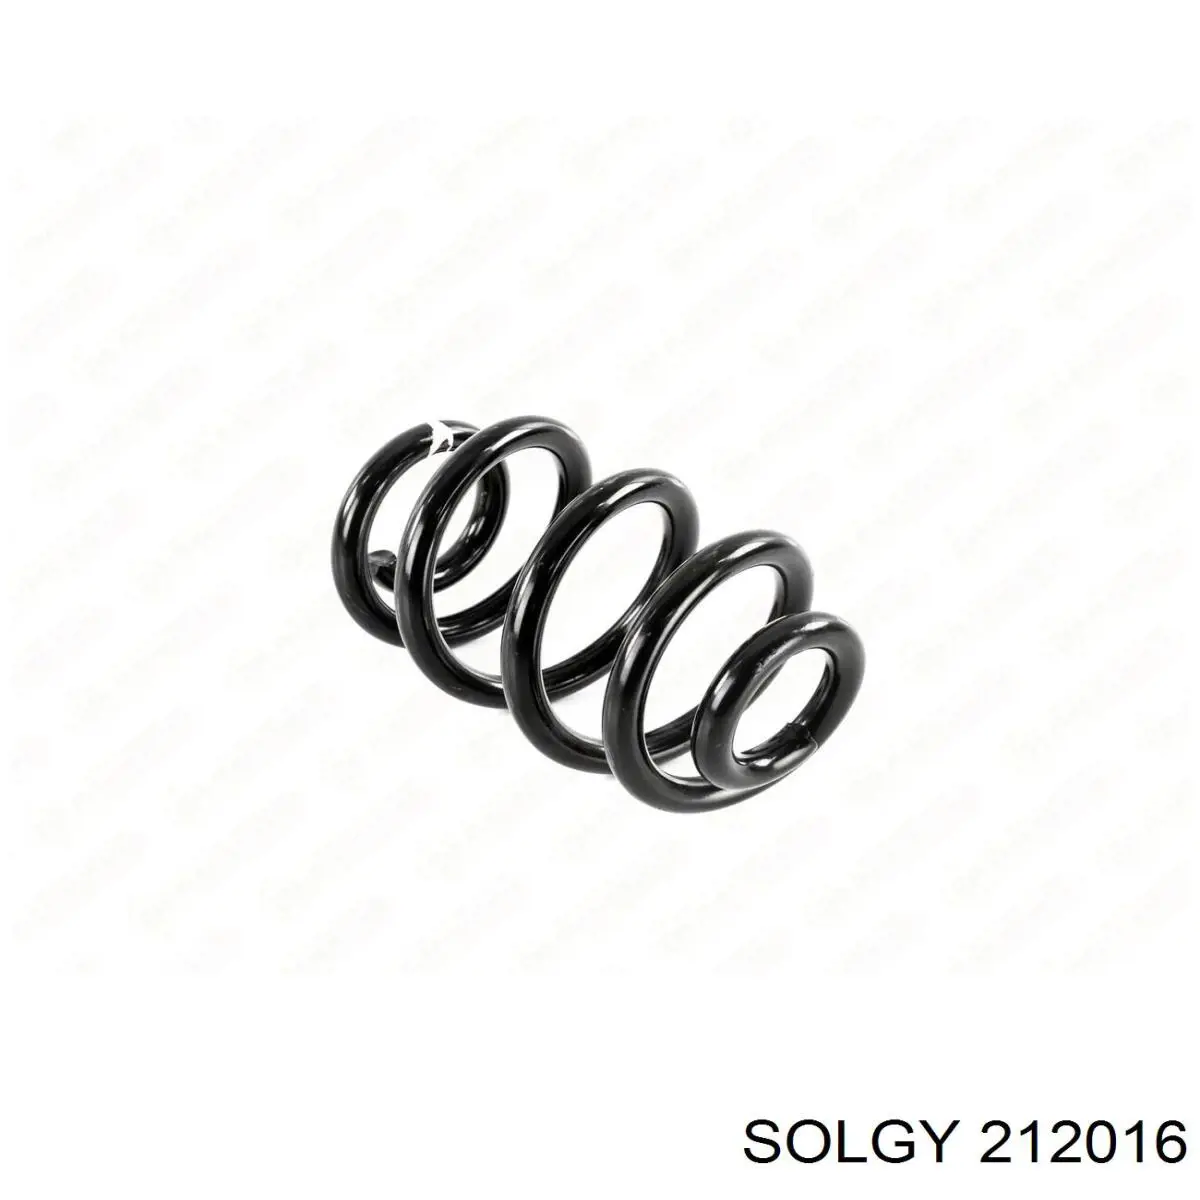 212016 Solgy mola dianteira